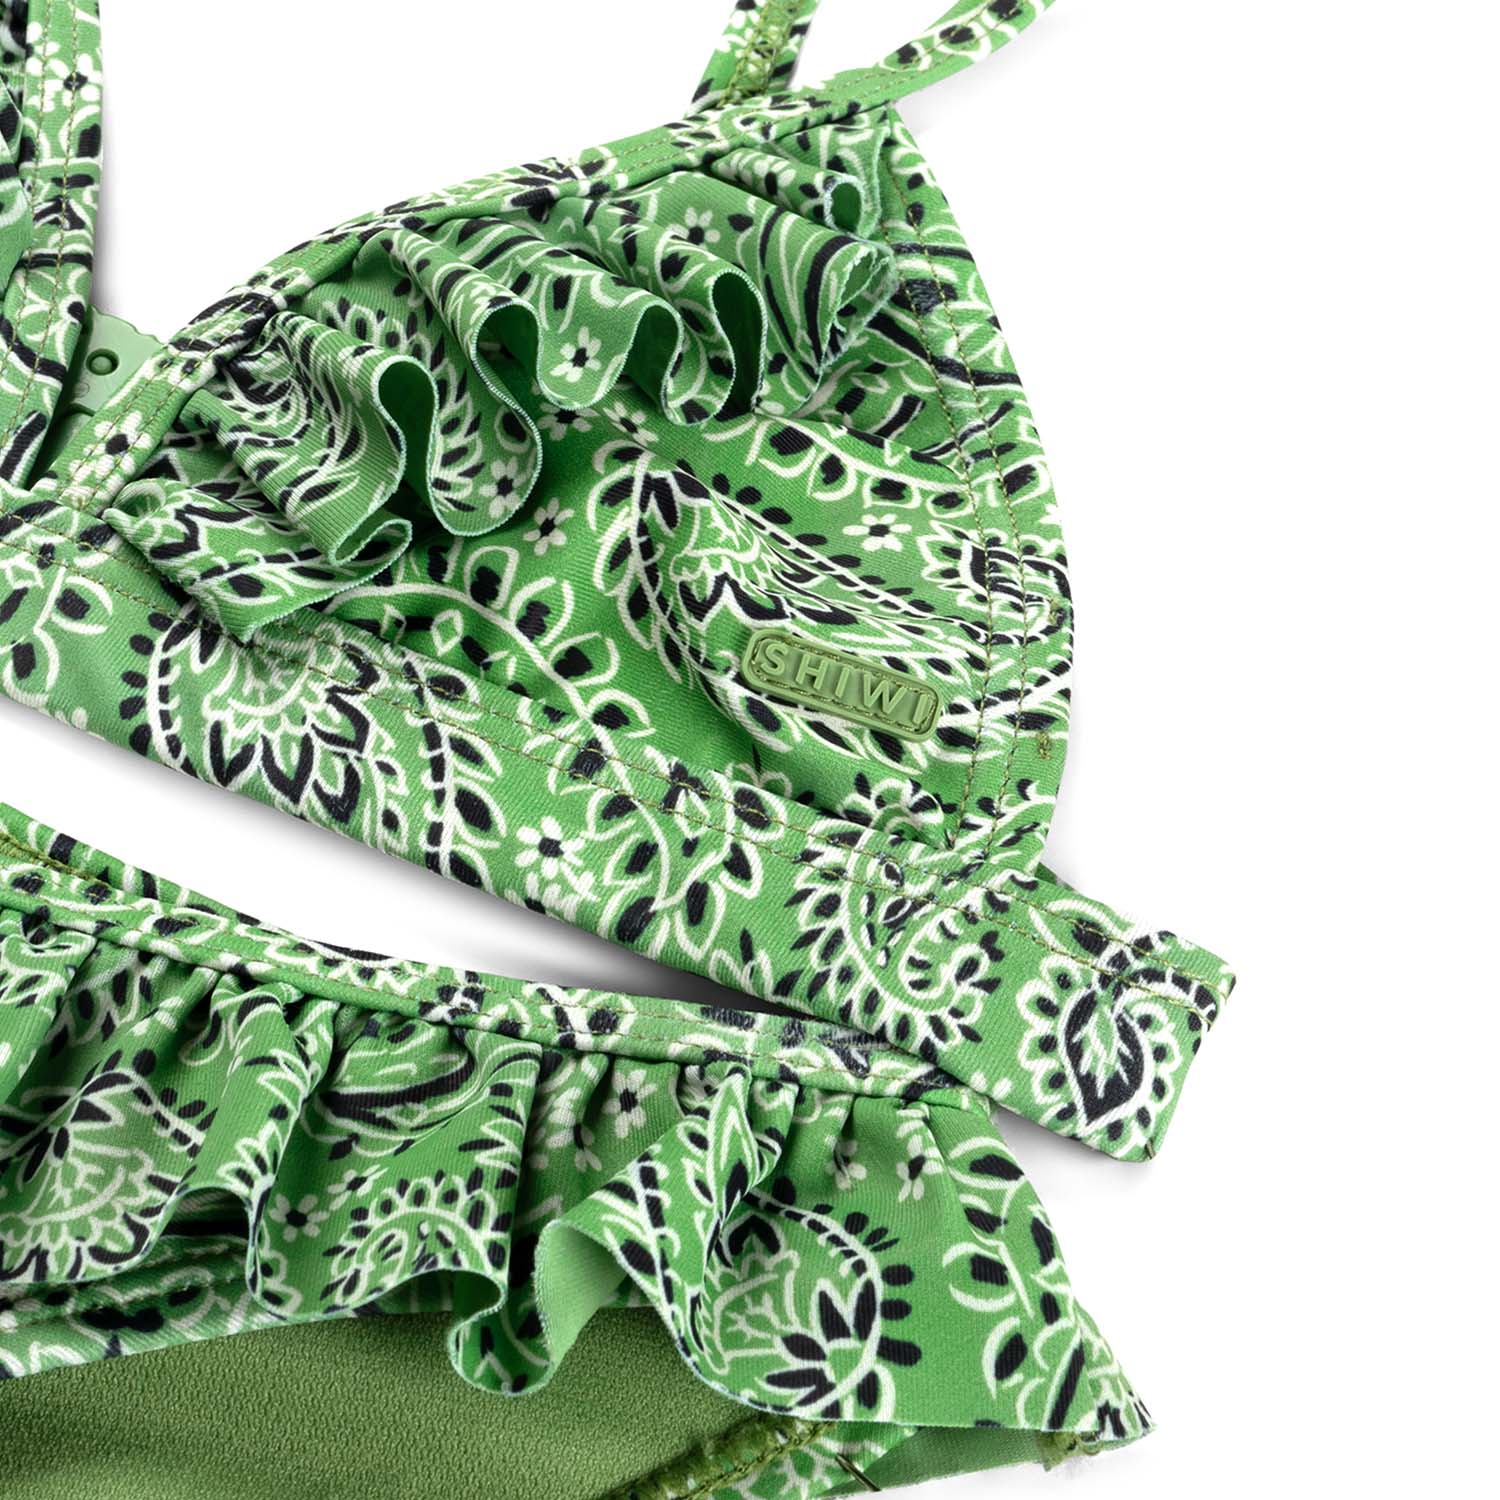 Meisjes BLAKE bikini set POOLSIDE PAISLEY  van Shiwi in de kleur kelly green  in maat 170-176.